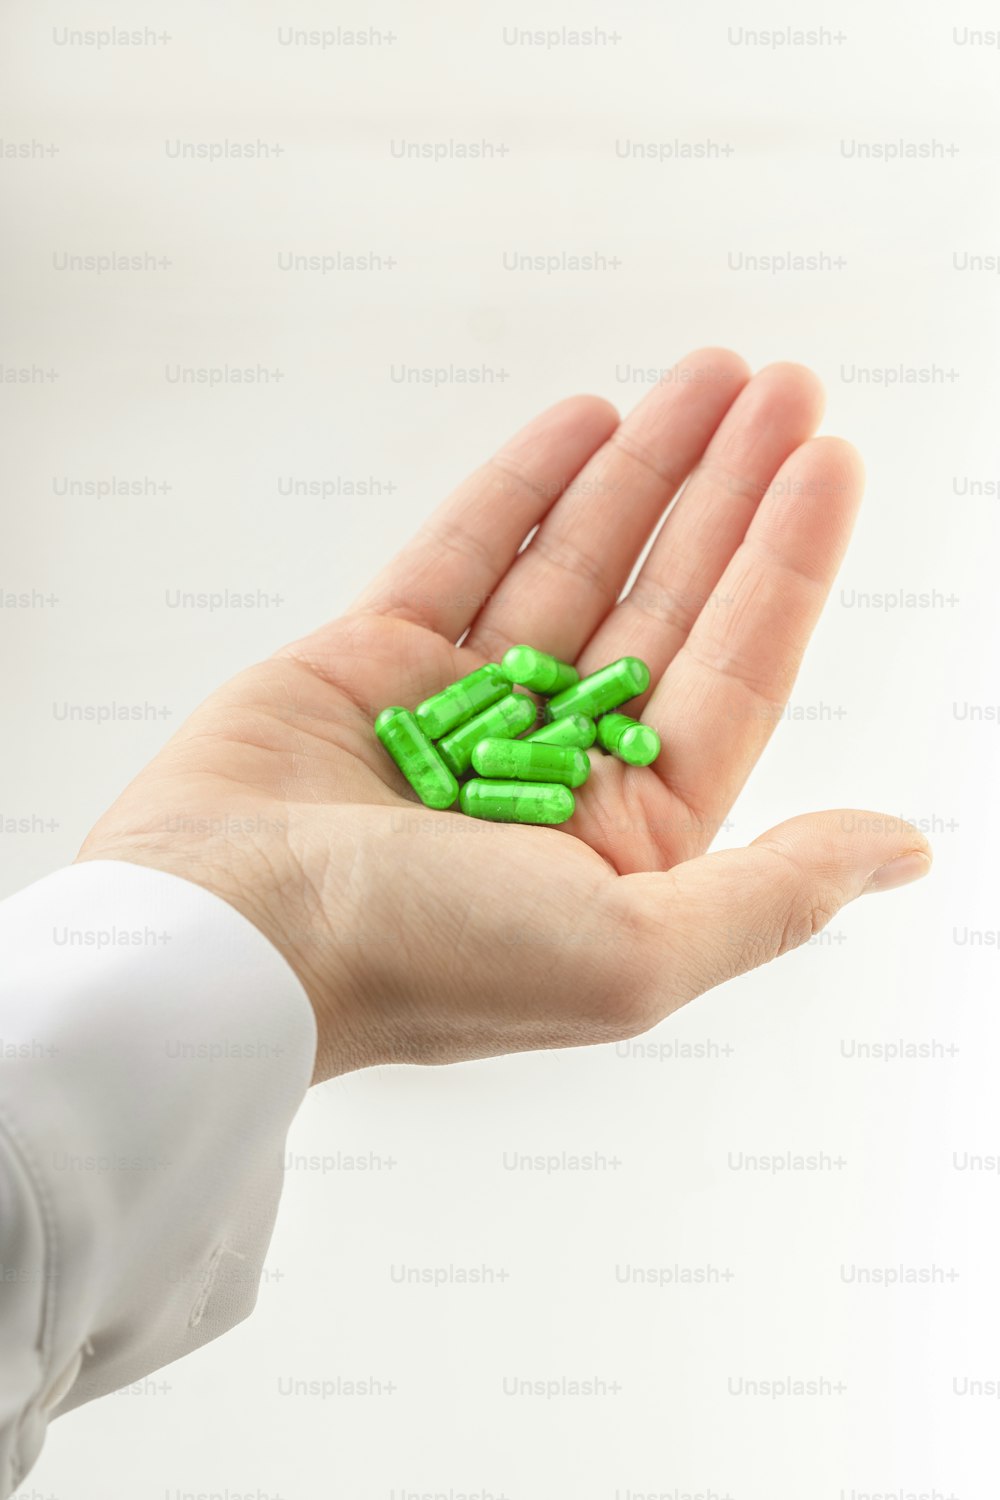 una mano sosteniendo un puñado de píldoras verdes